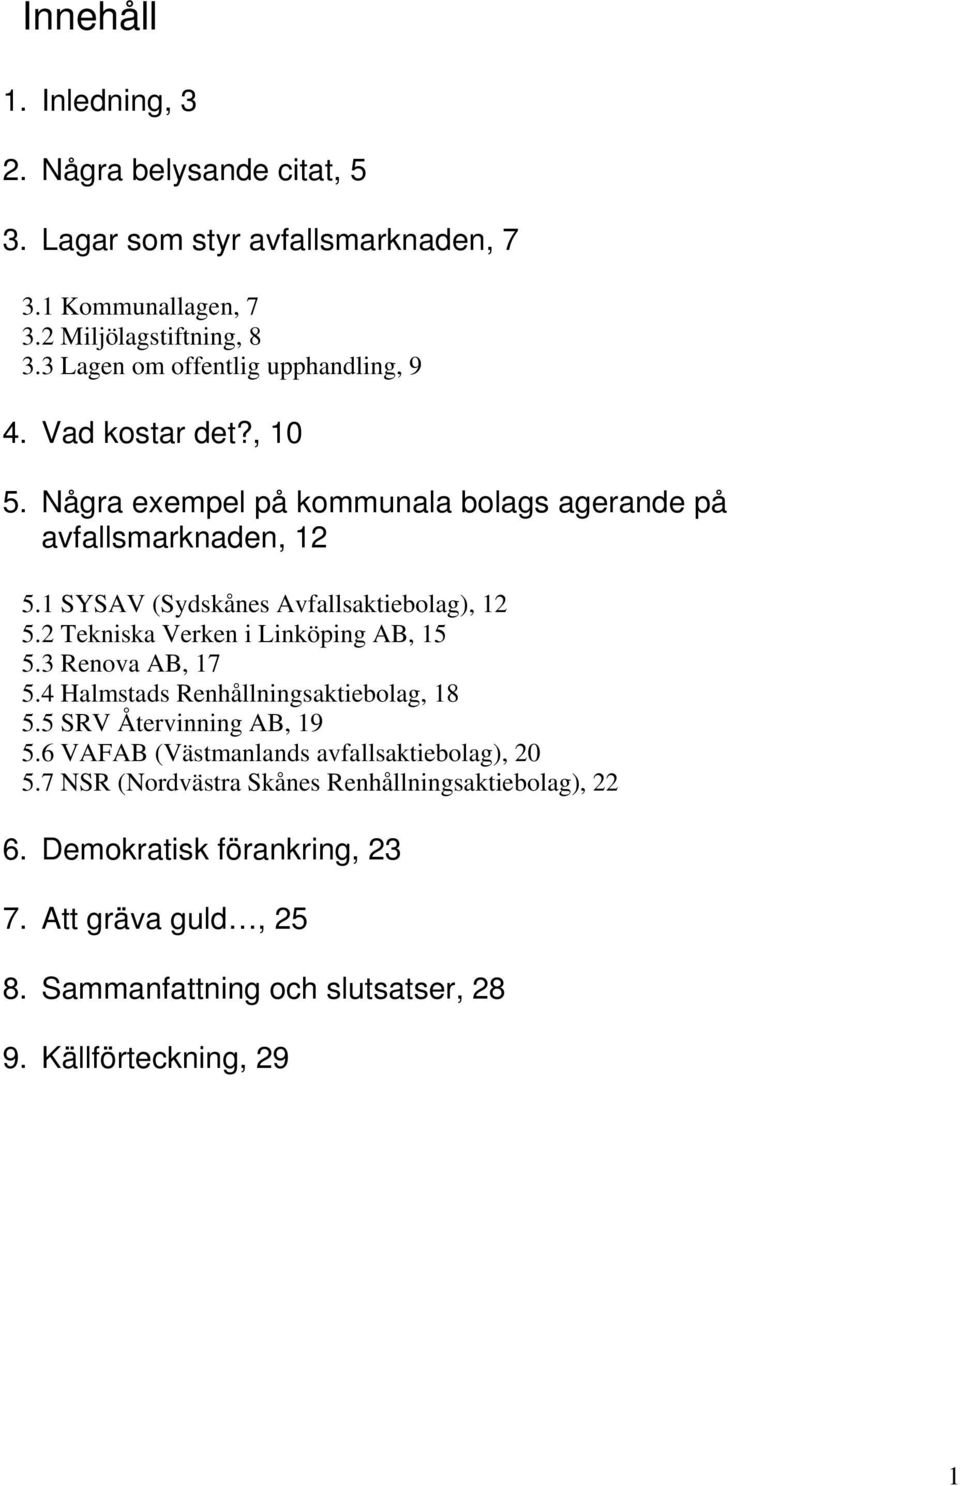 1 SYSAV (Sydskånes Avfallsaktiebolag), 12 5.2 Tekniska Verken i Linköping AB, 15 5.3 Renova AB, 17 5.4 Halmstads Renhållningsaktiebolag, 18 5.